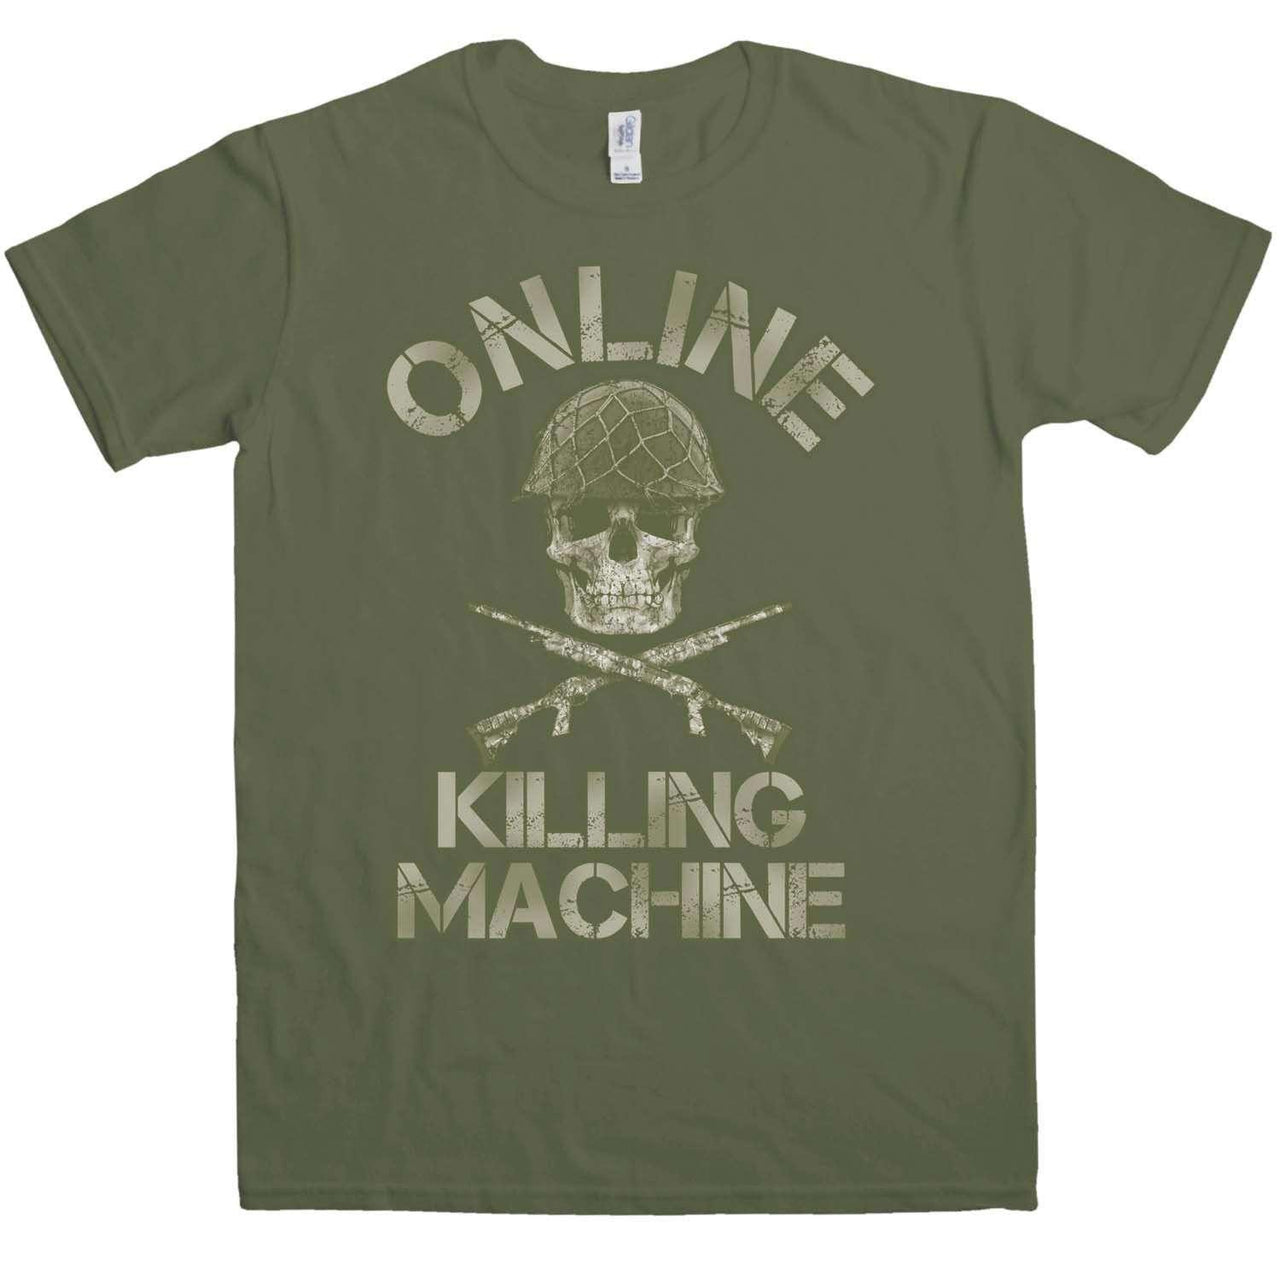 Online Killing Machine T-Shirt For Men 8Ball